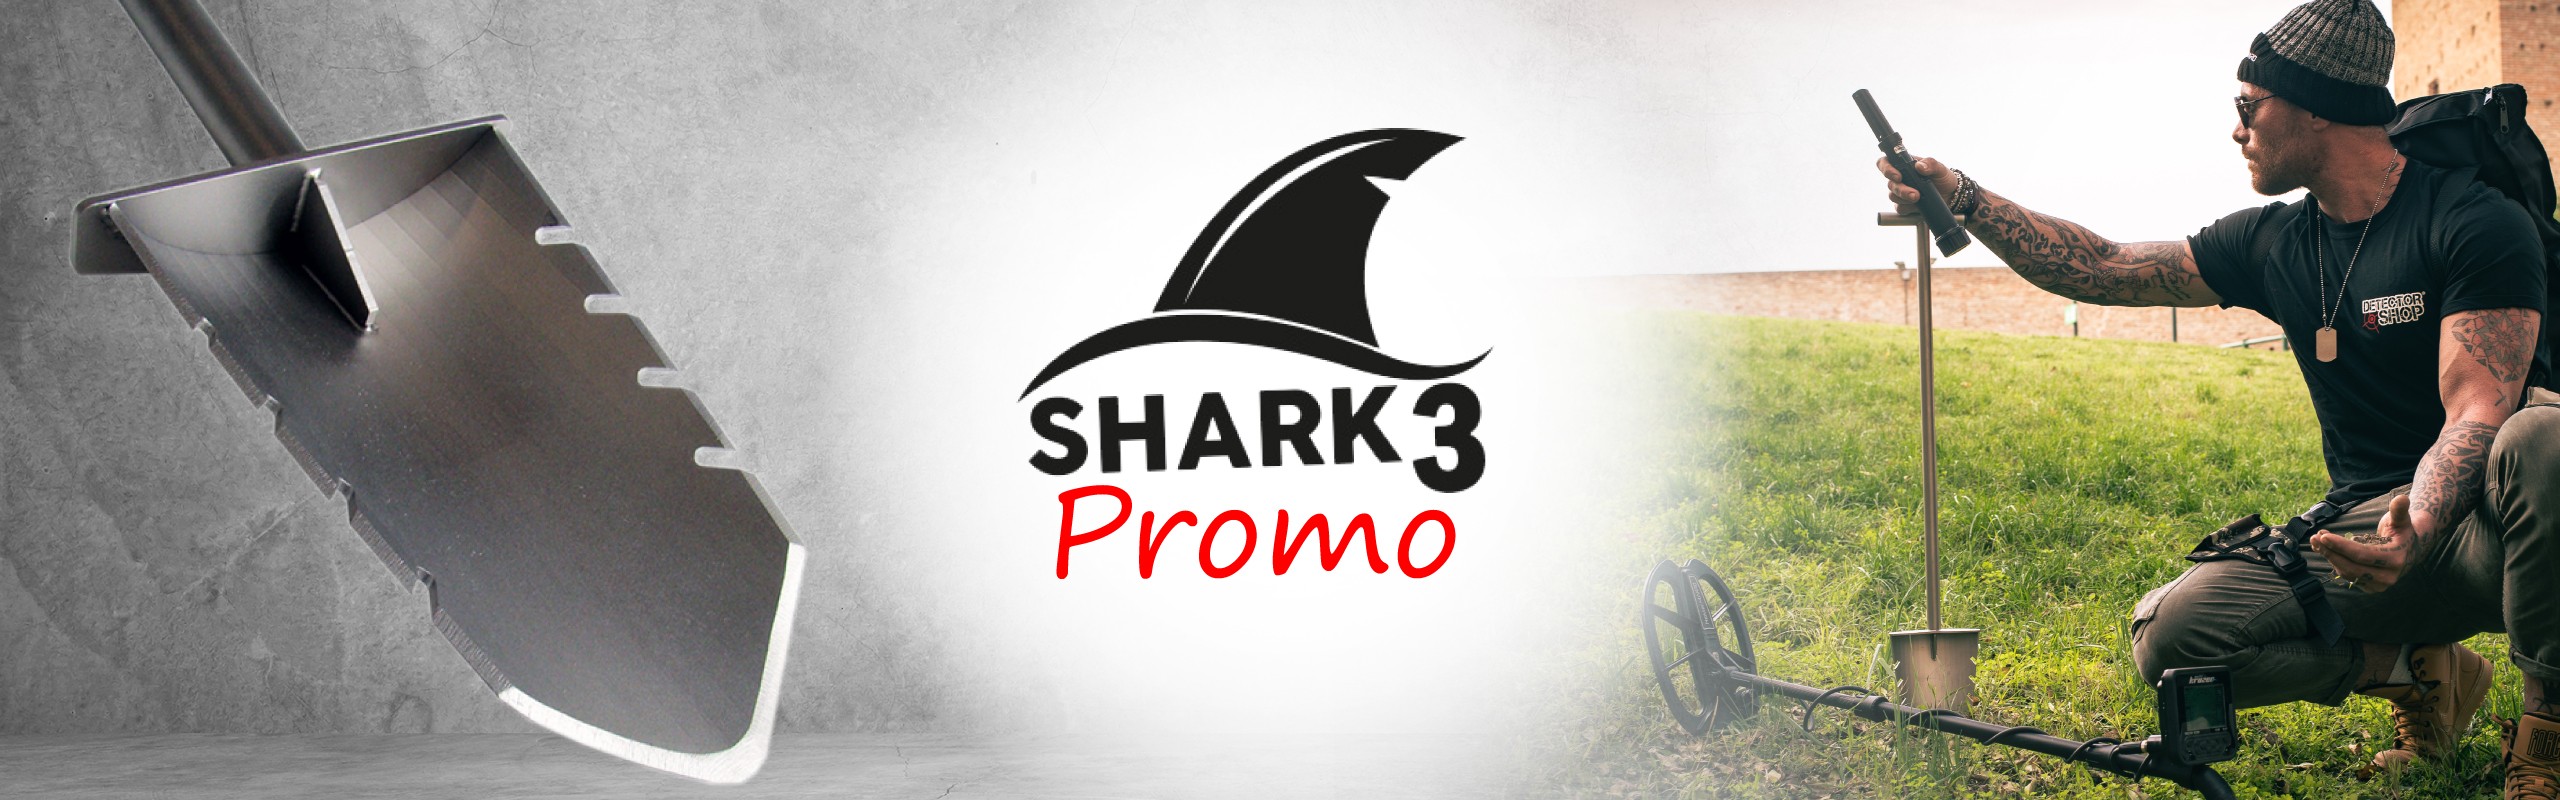 Promo Shark 3